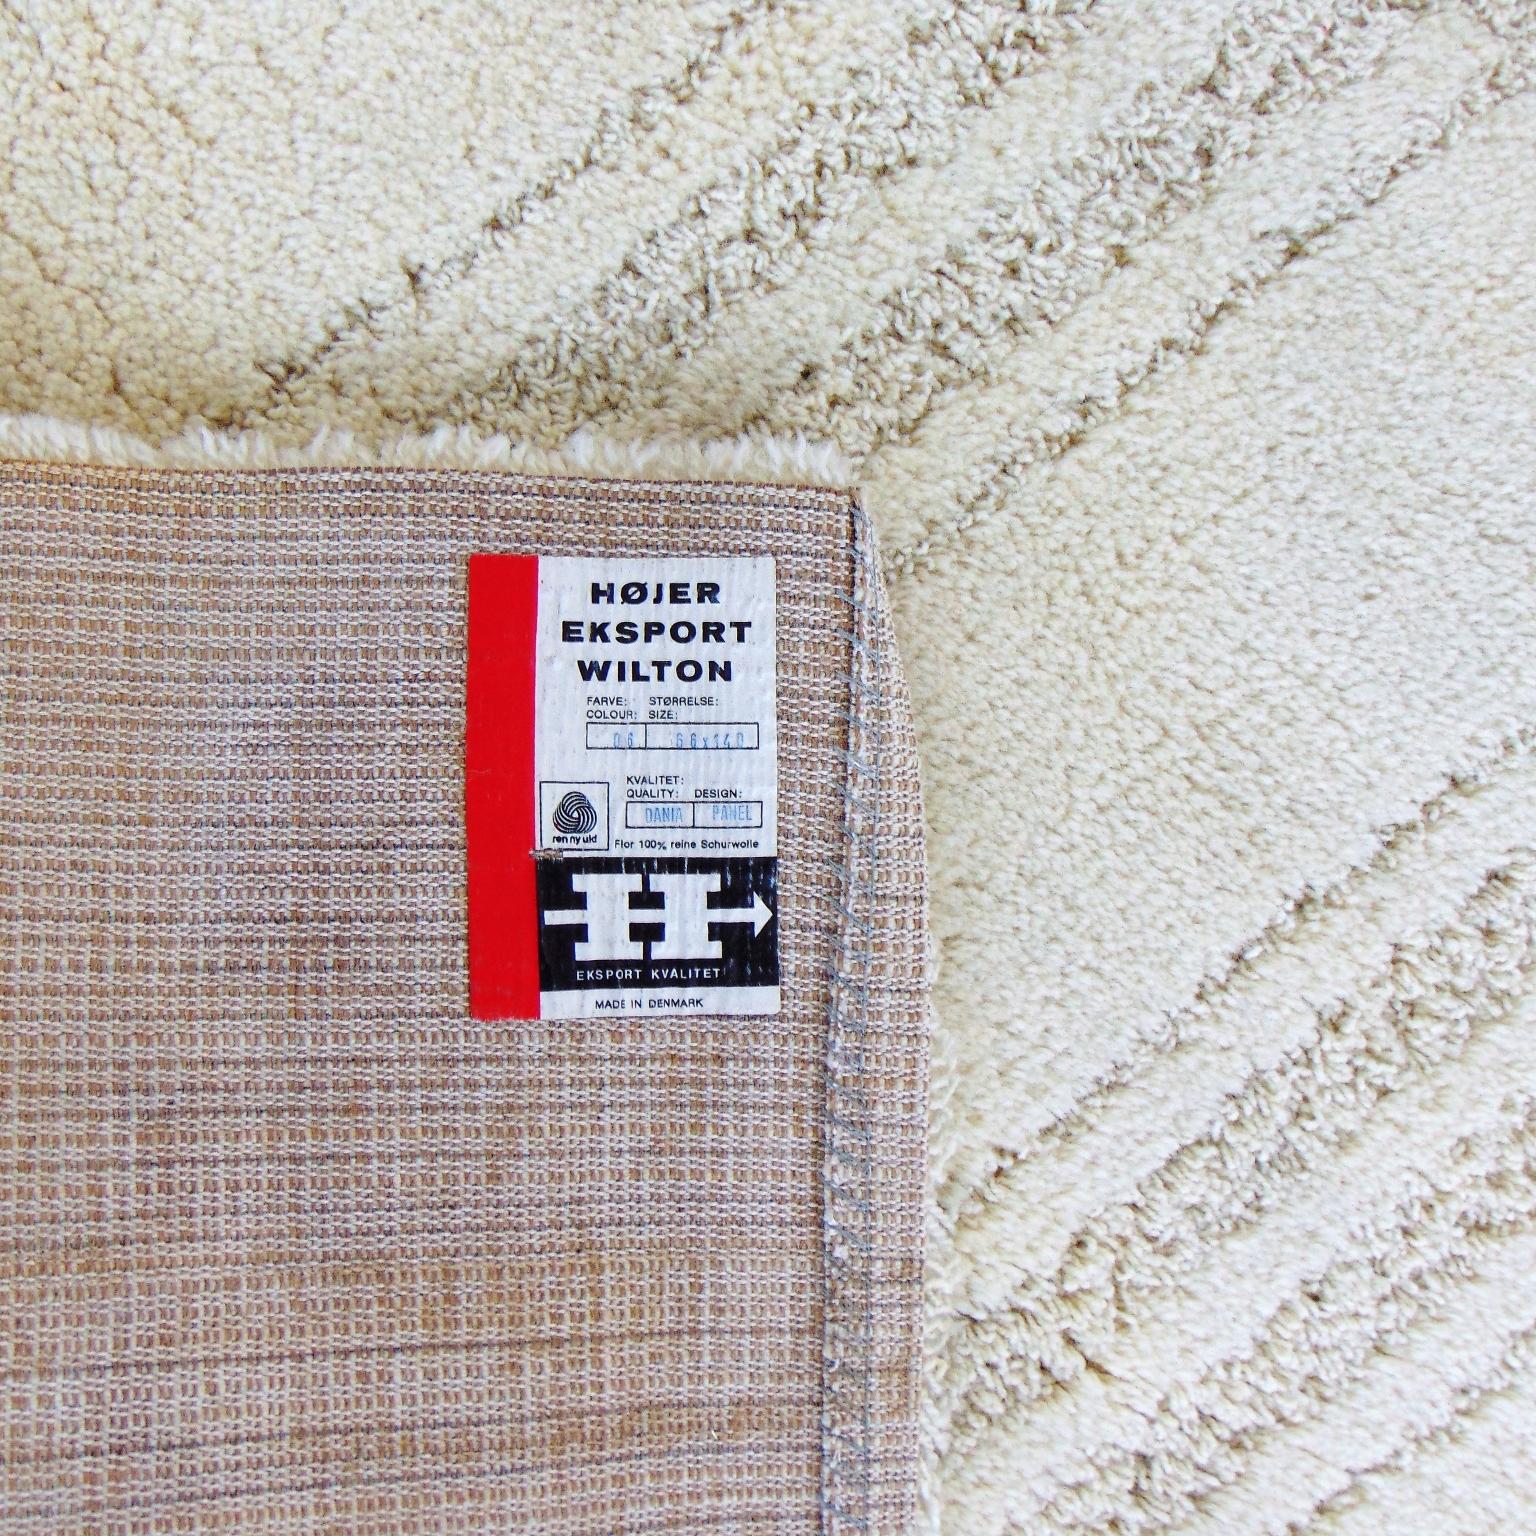 Teppiche aus reiner Schurwolle mit der berühmten Technik von Marguerite Rye.
Farbe: Creme (Hojers Farbnummer 6).
Die Teppiche wurden gewaschen, aber nicht geweißt, daher können sie an einigen Stellen dunklere Farbtöne aufweisen. Sie sind sehr